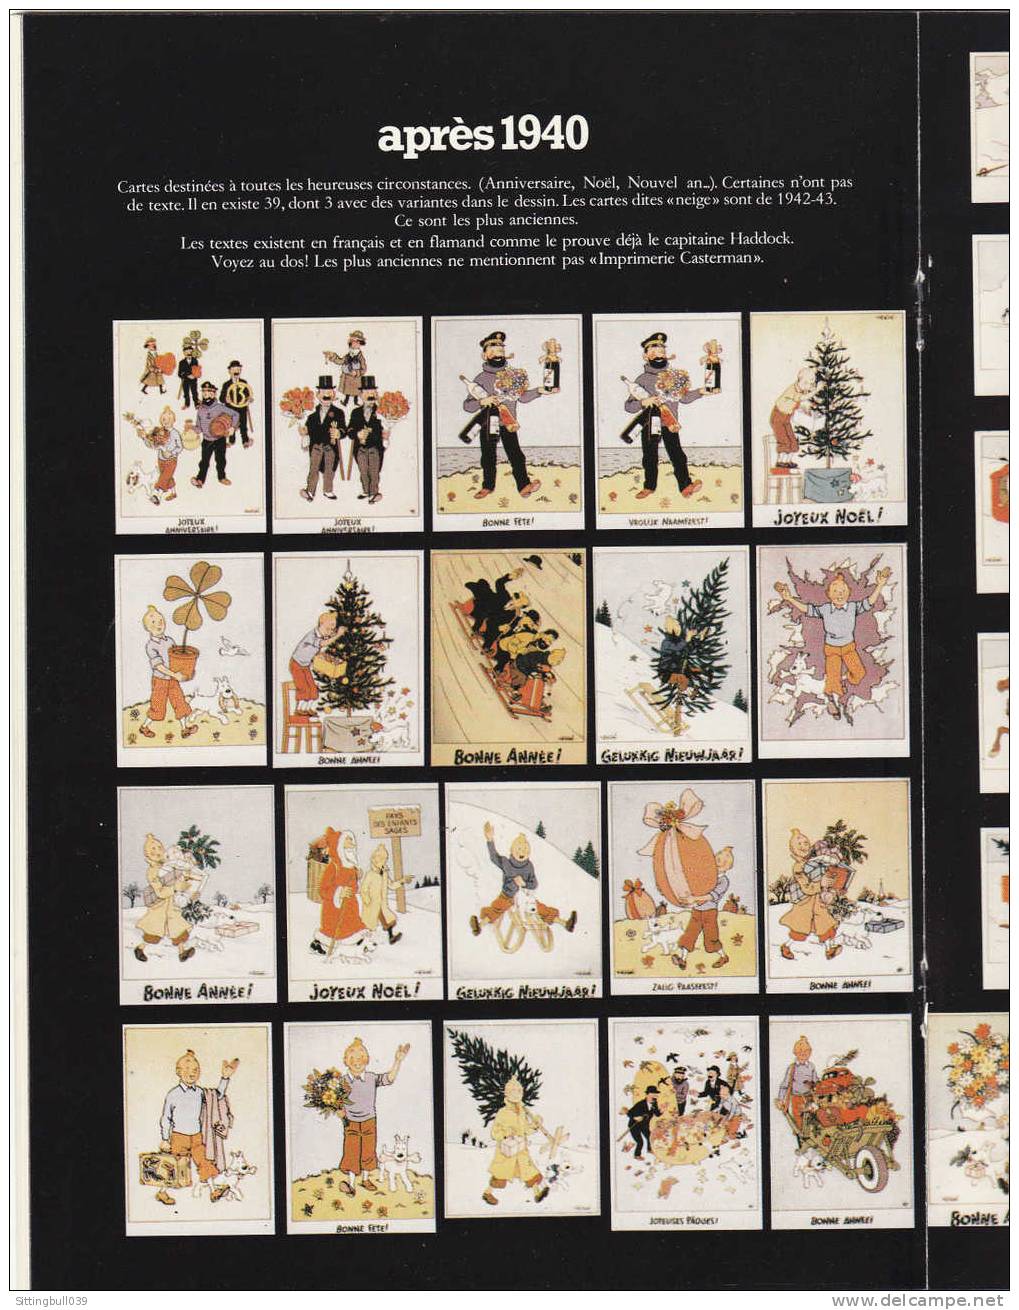 L´UNIVERS d´Hergé. Catalogue de la Collection unique de STEEMAN. 1983. TL 2000 EX. RARE  ! Une réf. pour les Tintinistes